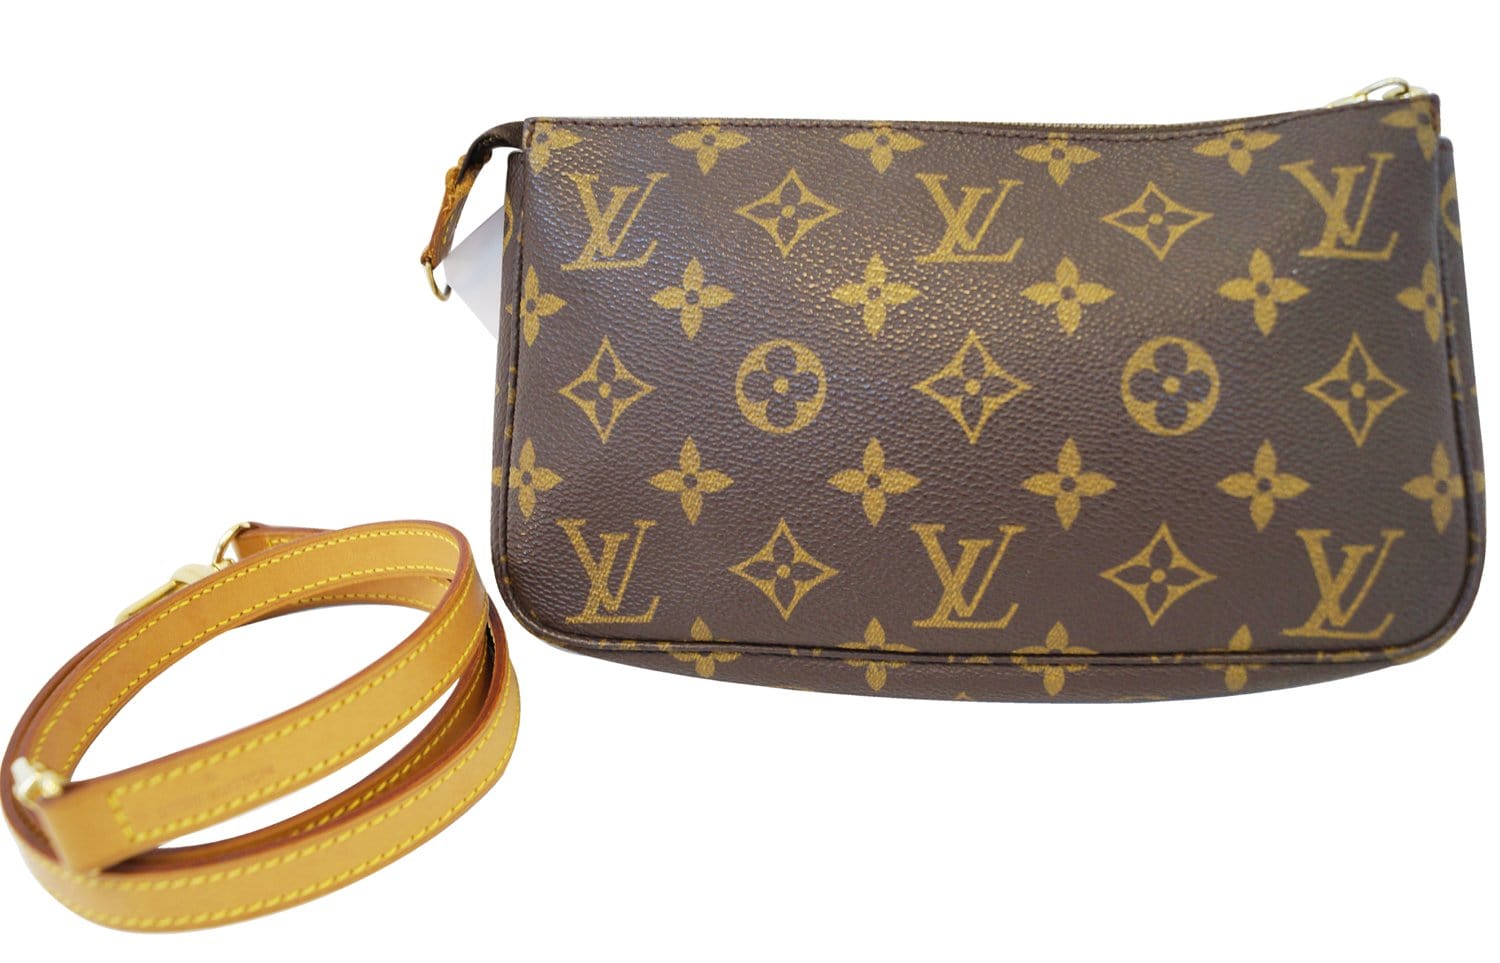 Excellent condition and authentic Louis Vuitton Pochette bag